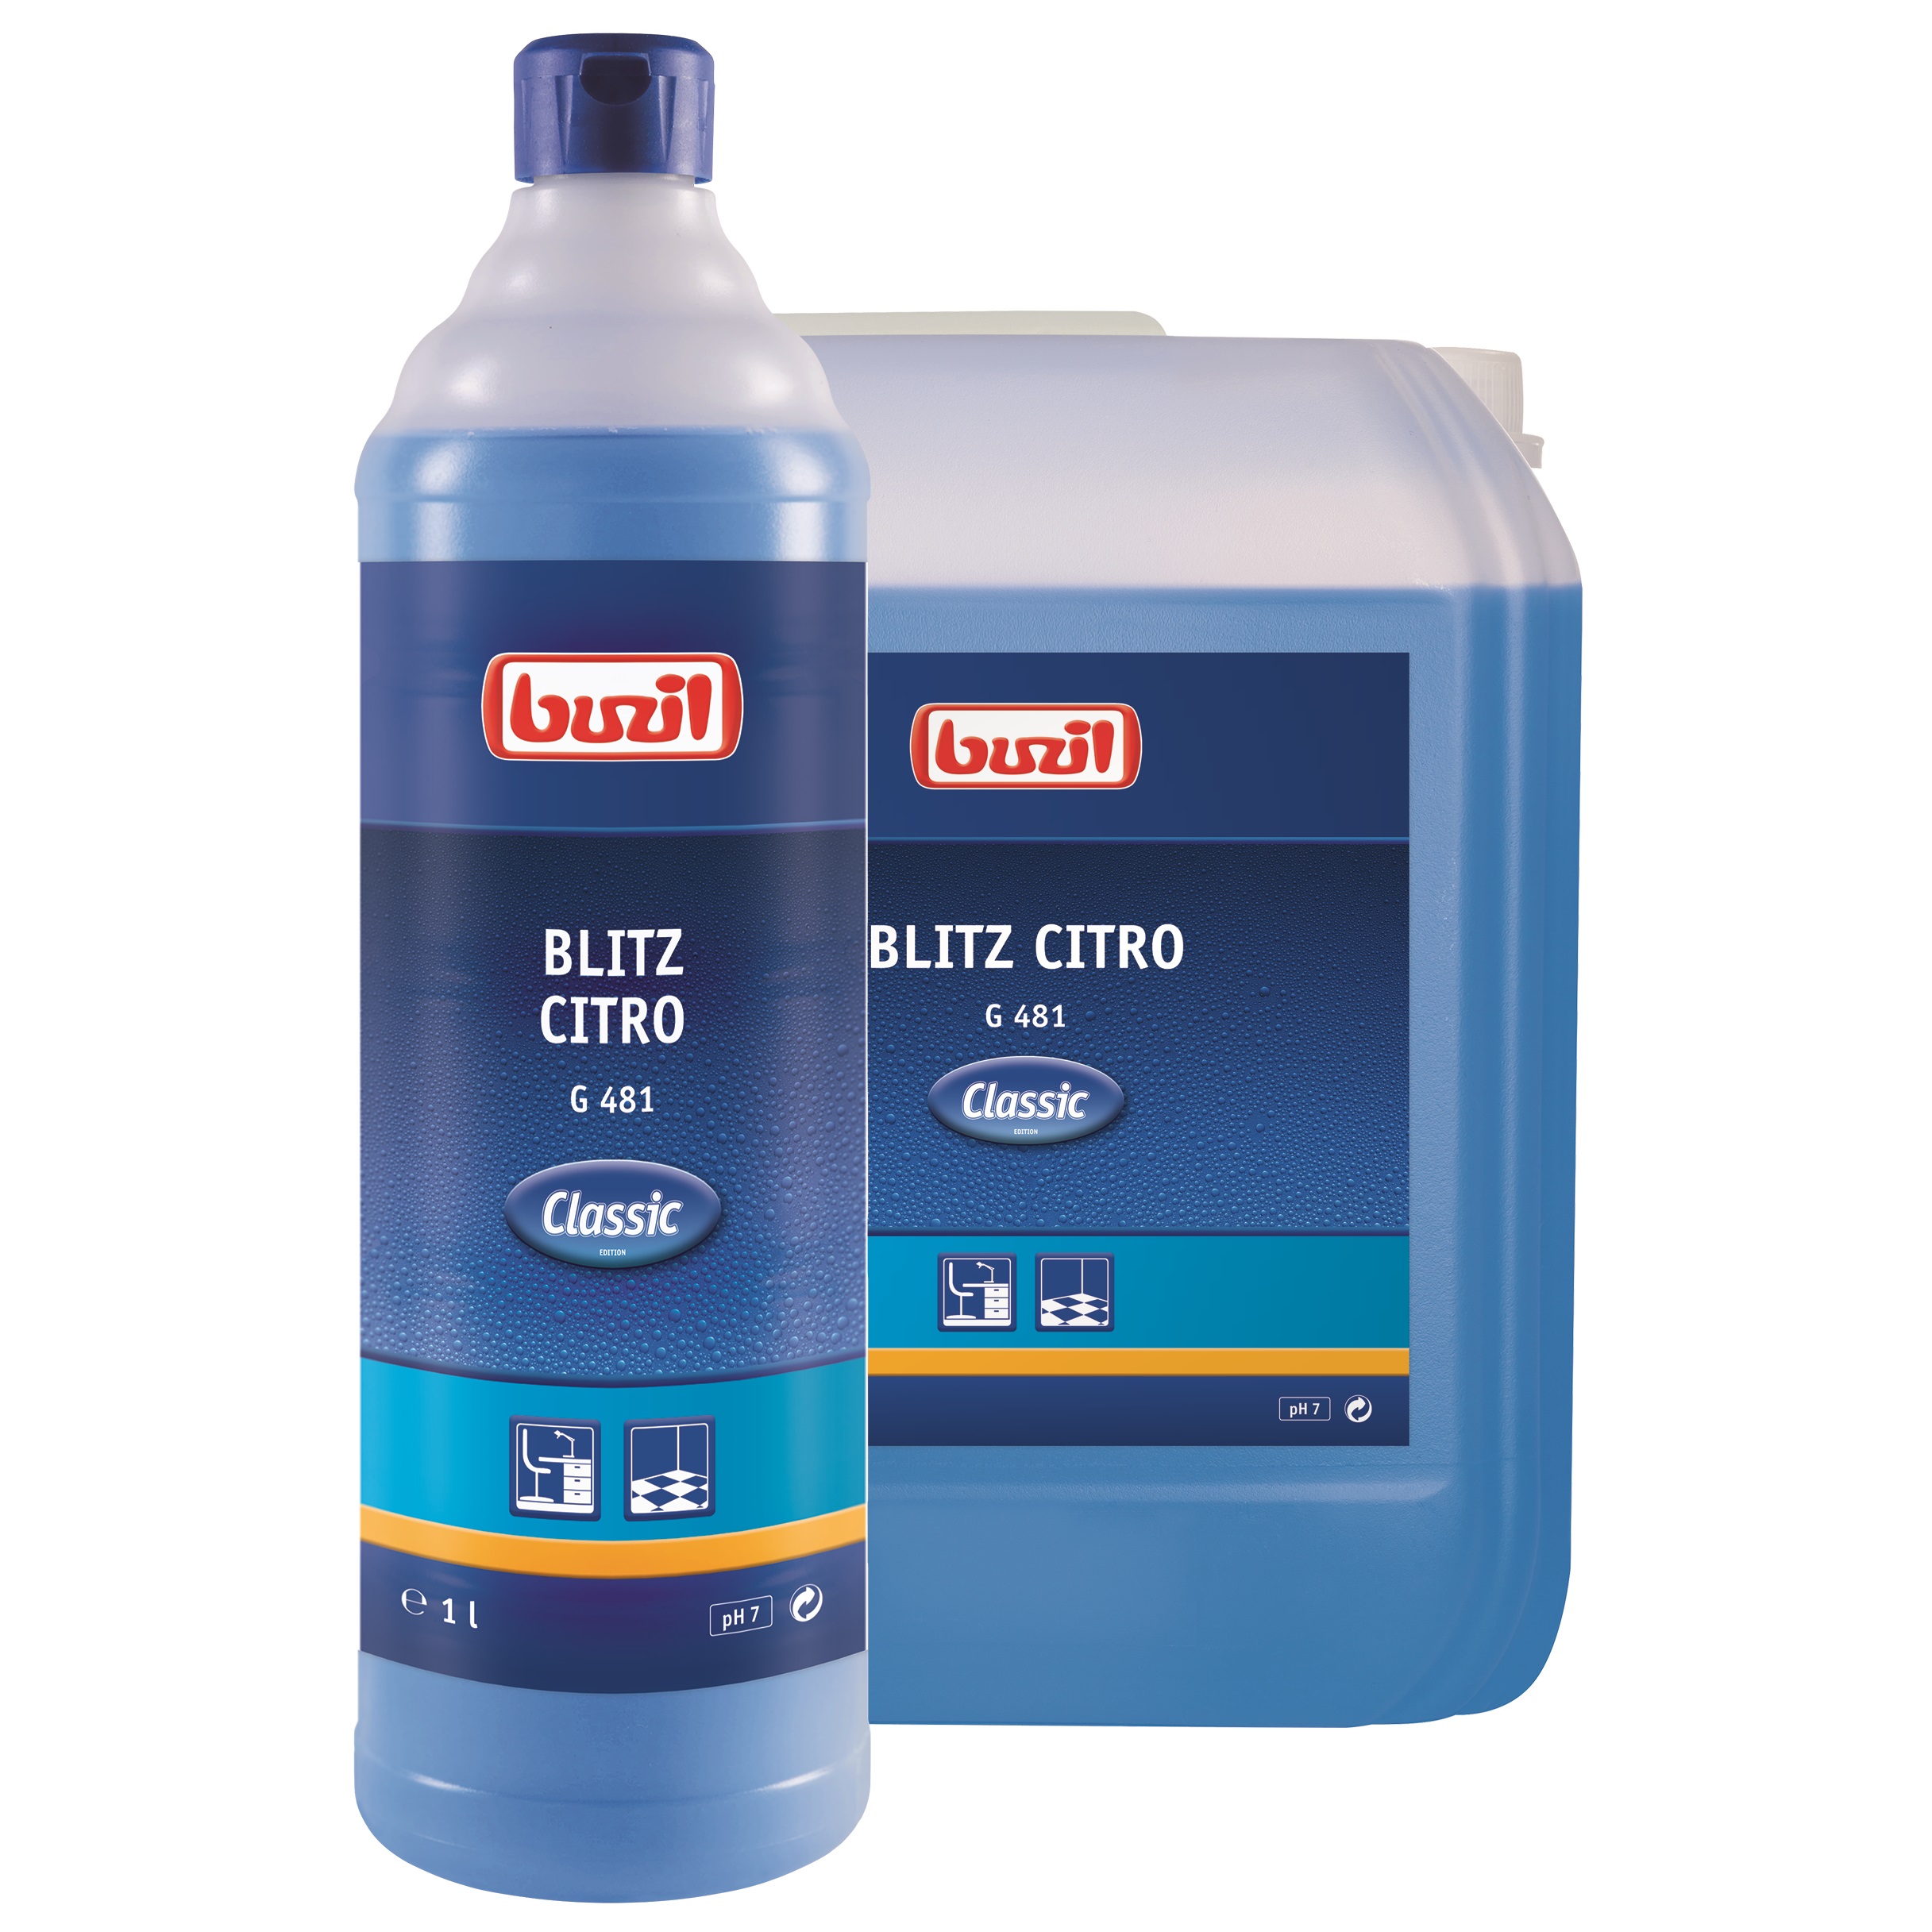 Buzil Blitz Citro G 481, neutraler Allesreiniger, 10 Liter Kanister